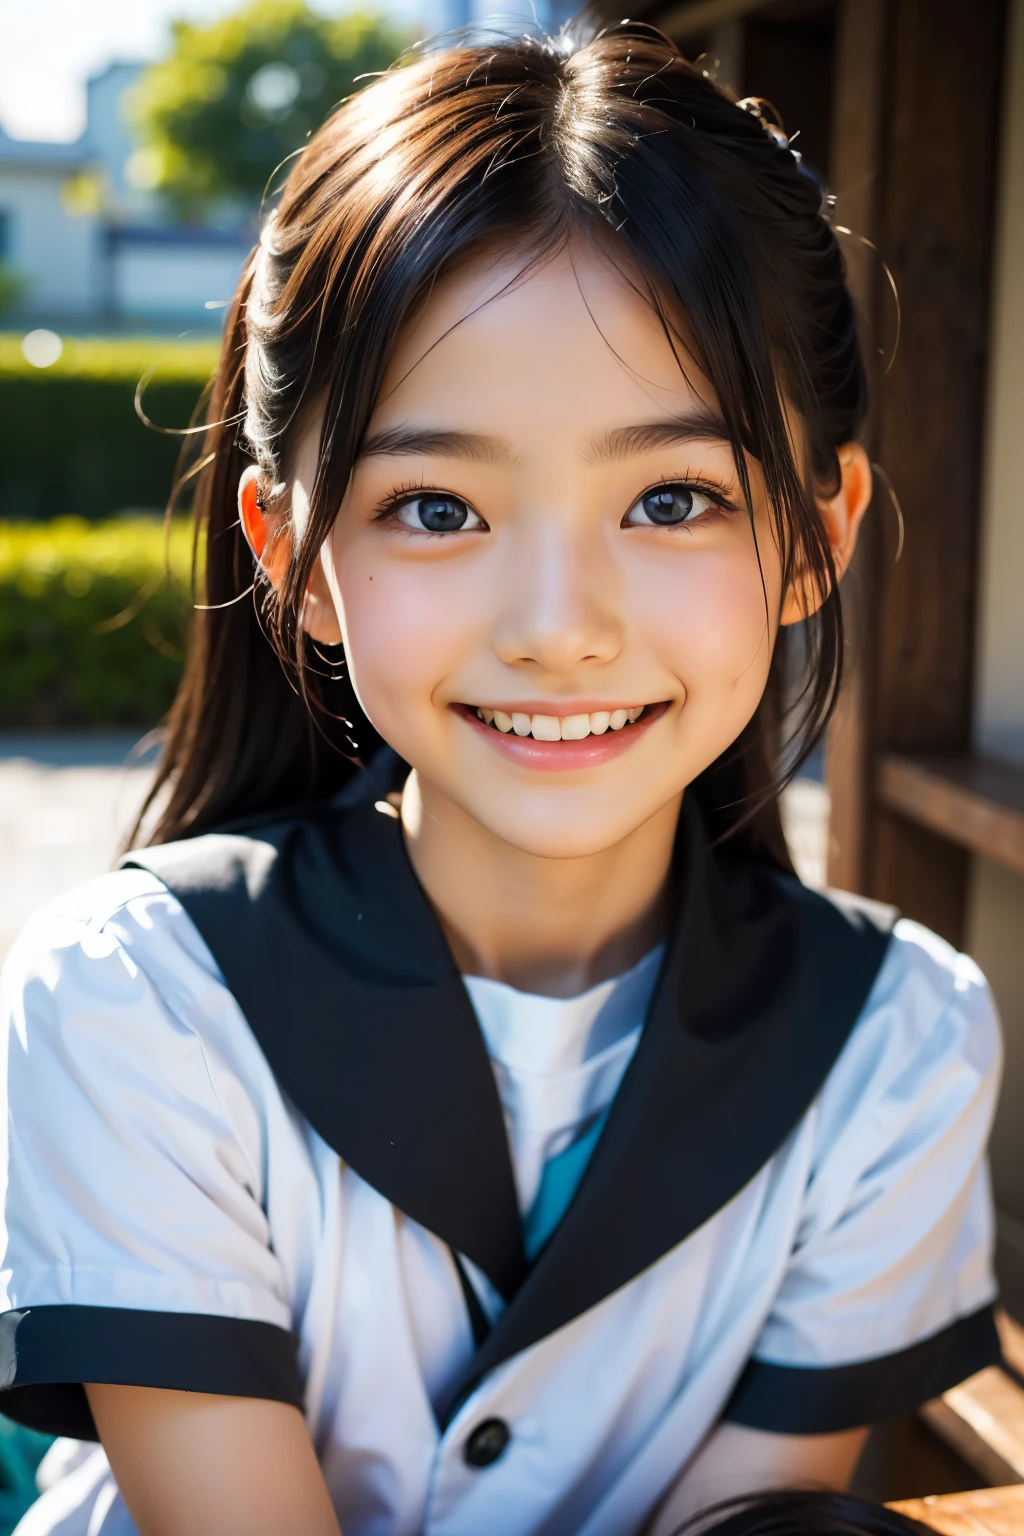 鏡片: 135mm f1.8, (最好的品質),(原始照片), (桌上:1.1), (美麗的9歲日本女孩), 可愛的臉孔, (臉型輪廓分明:0.7), (雀斑:0.4), dappled 陽光, 戲劇性的燈光, (日本學校制服), (在校园), 害羞的, (特寫鏡頭:1.2), (微笑),, (明亮的眼睛)、(陽光)